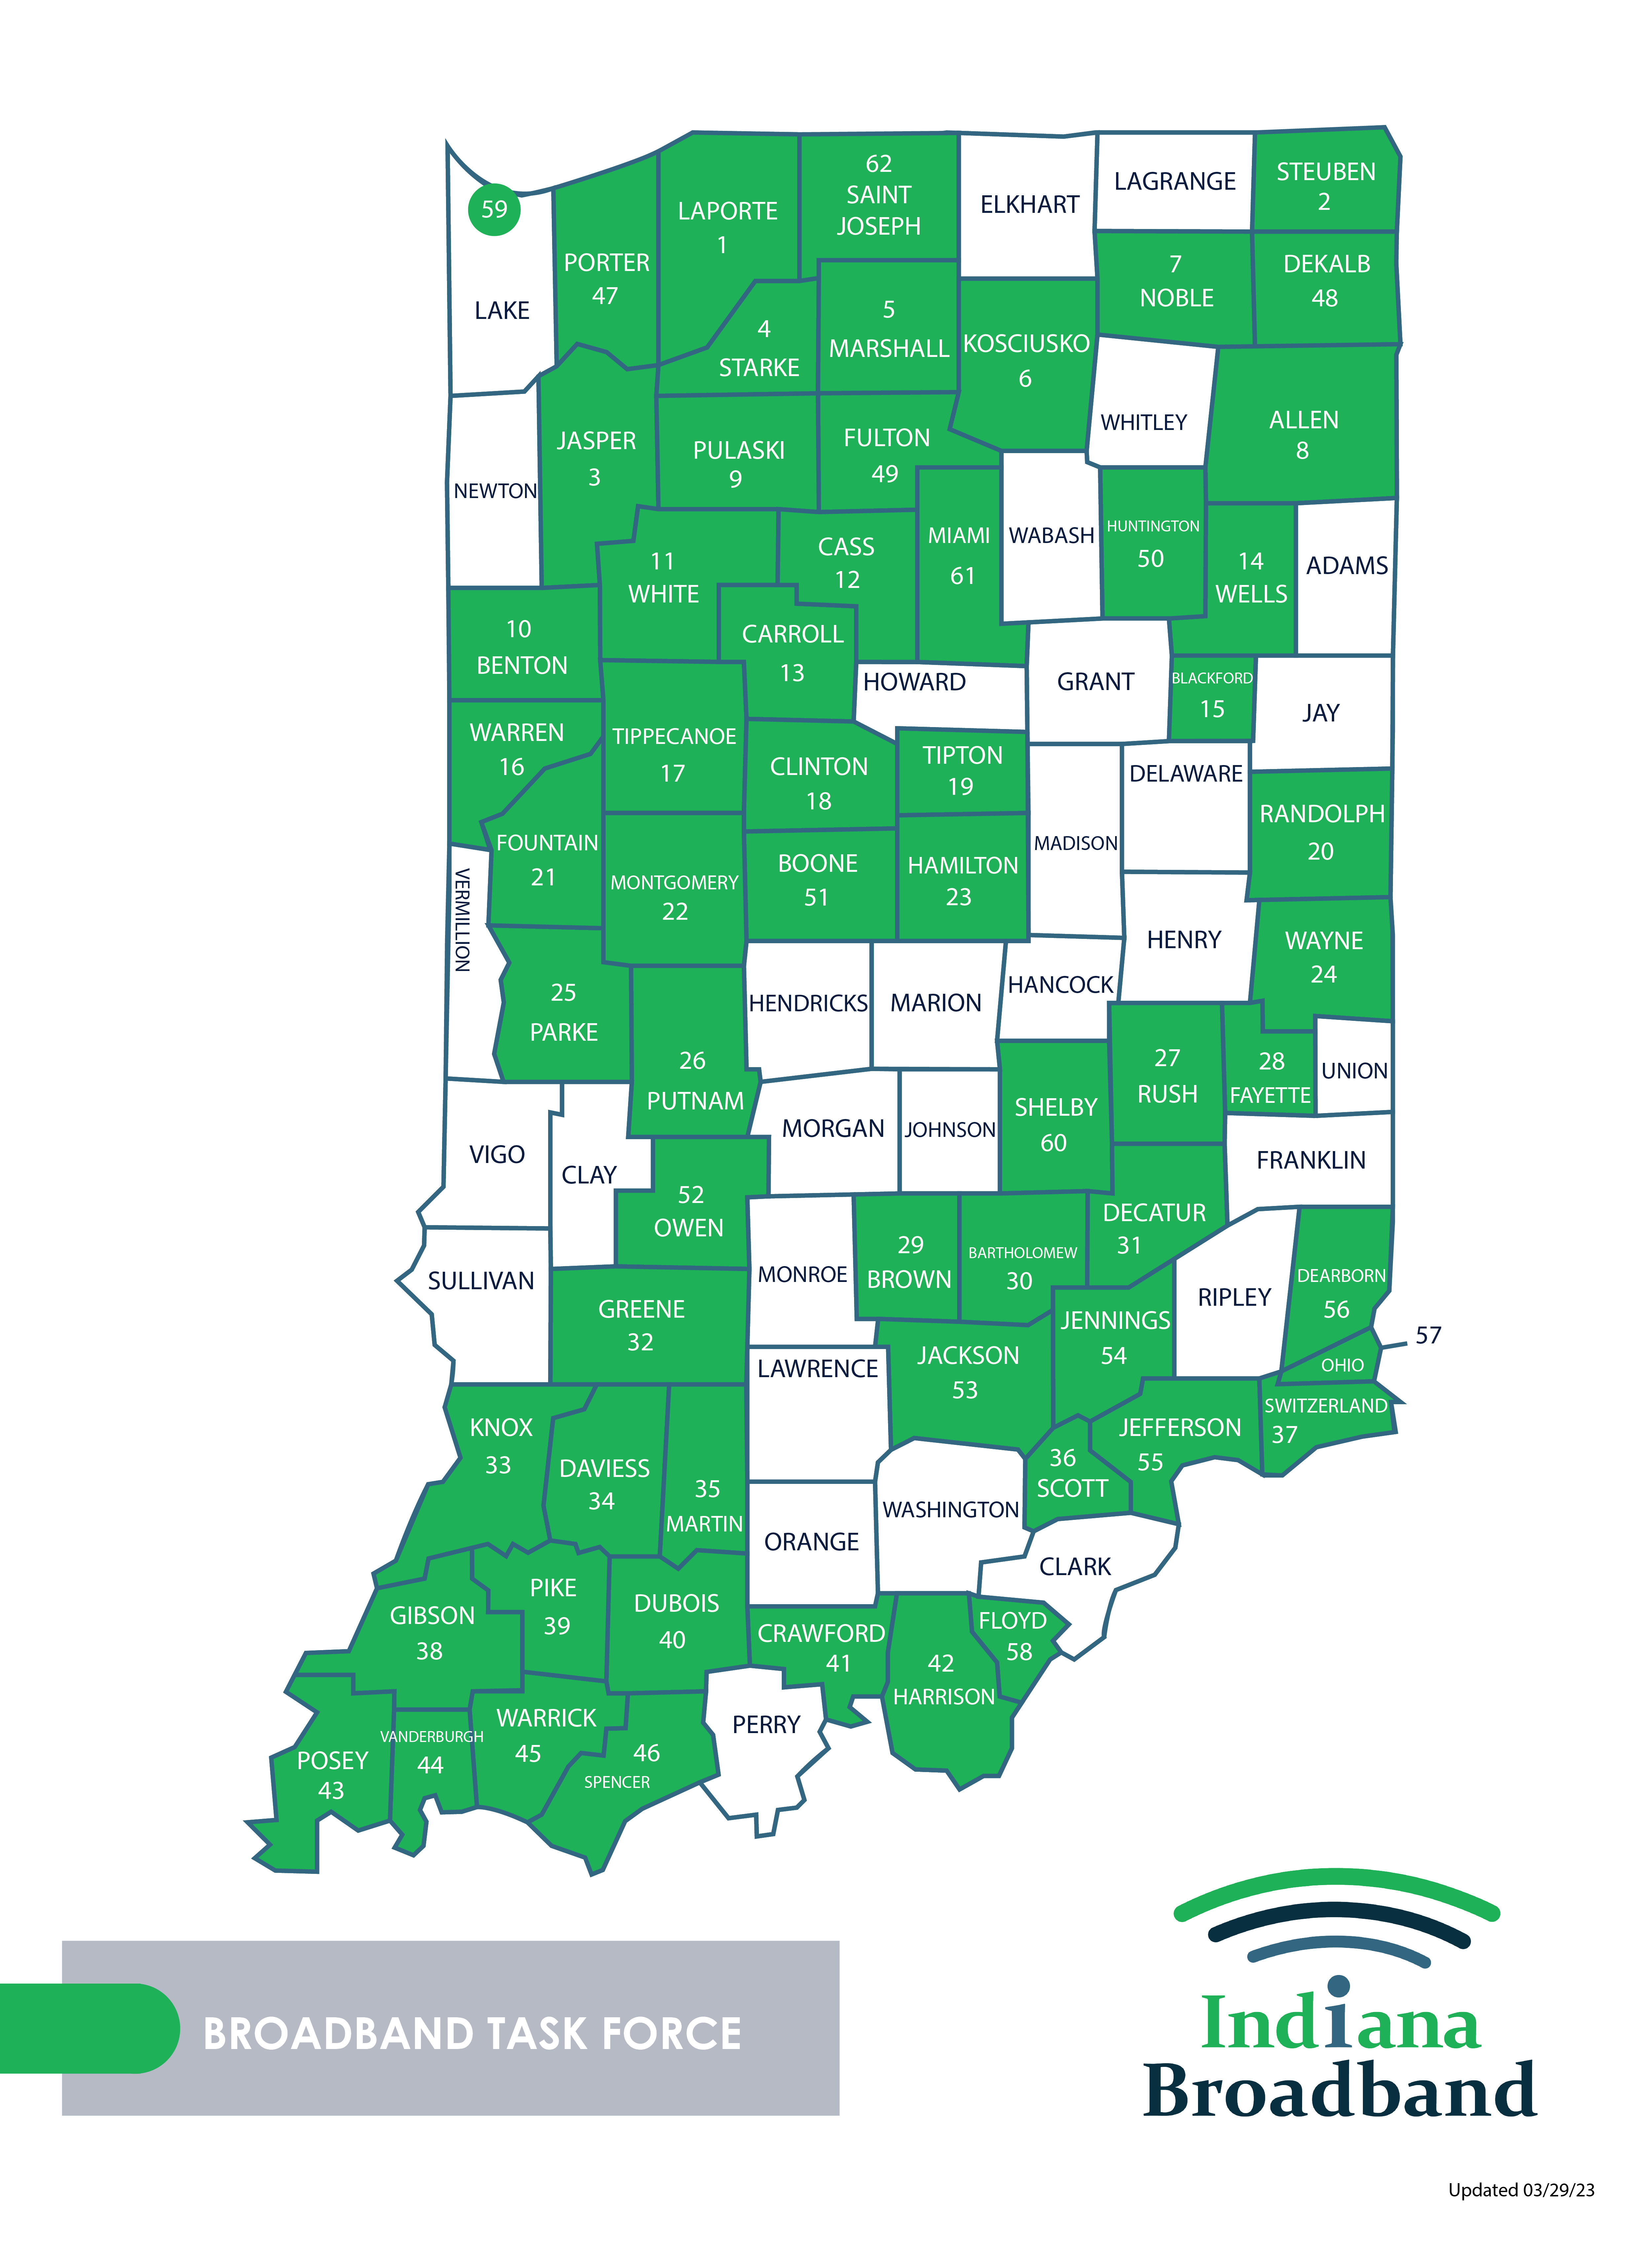 Indiana Broadband Taskforce Map